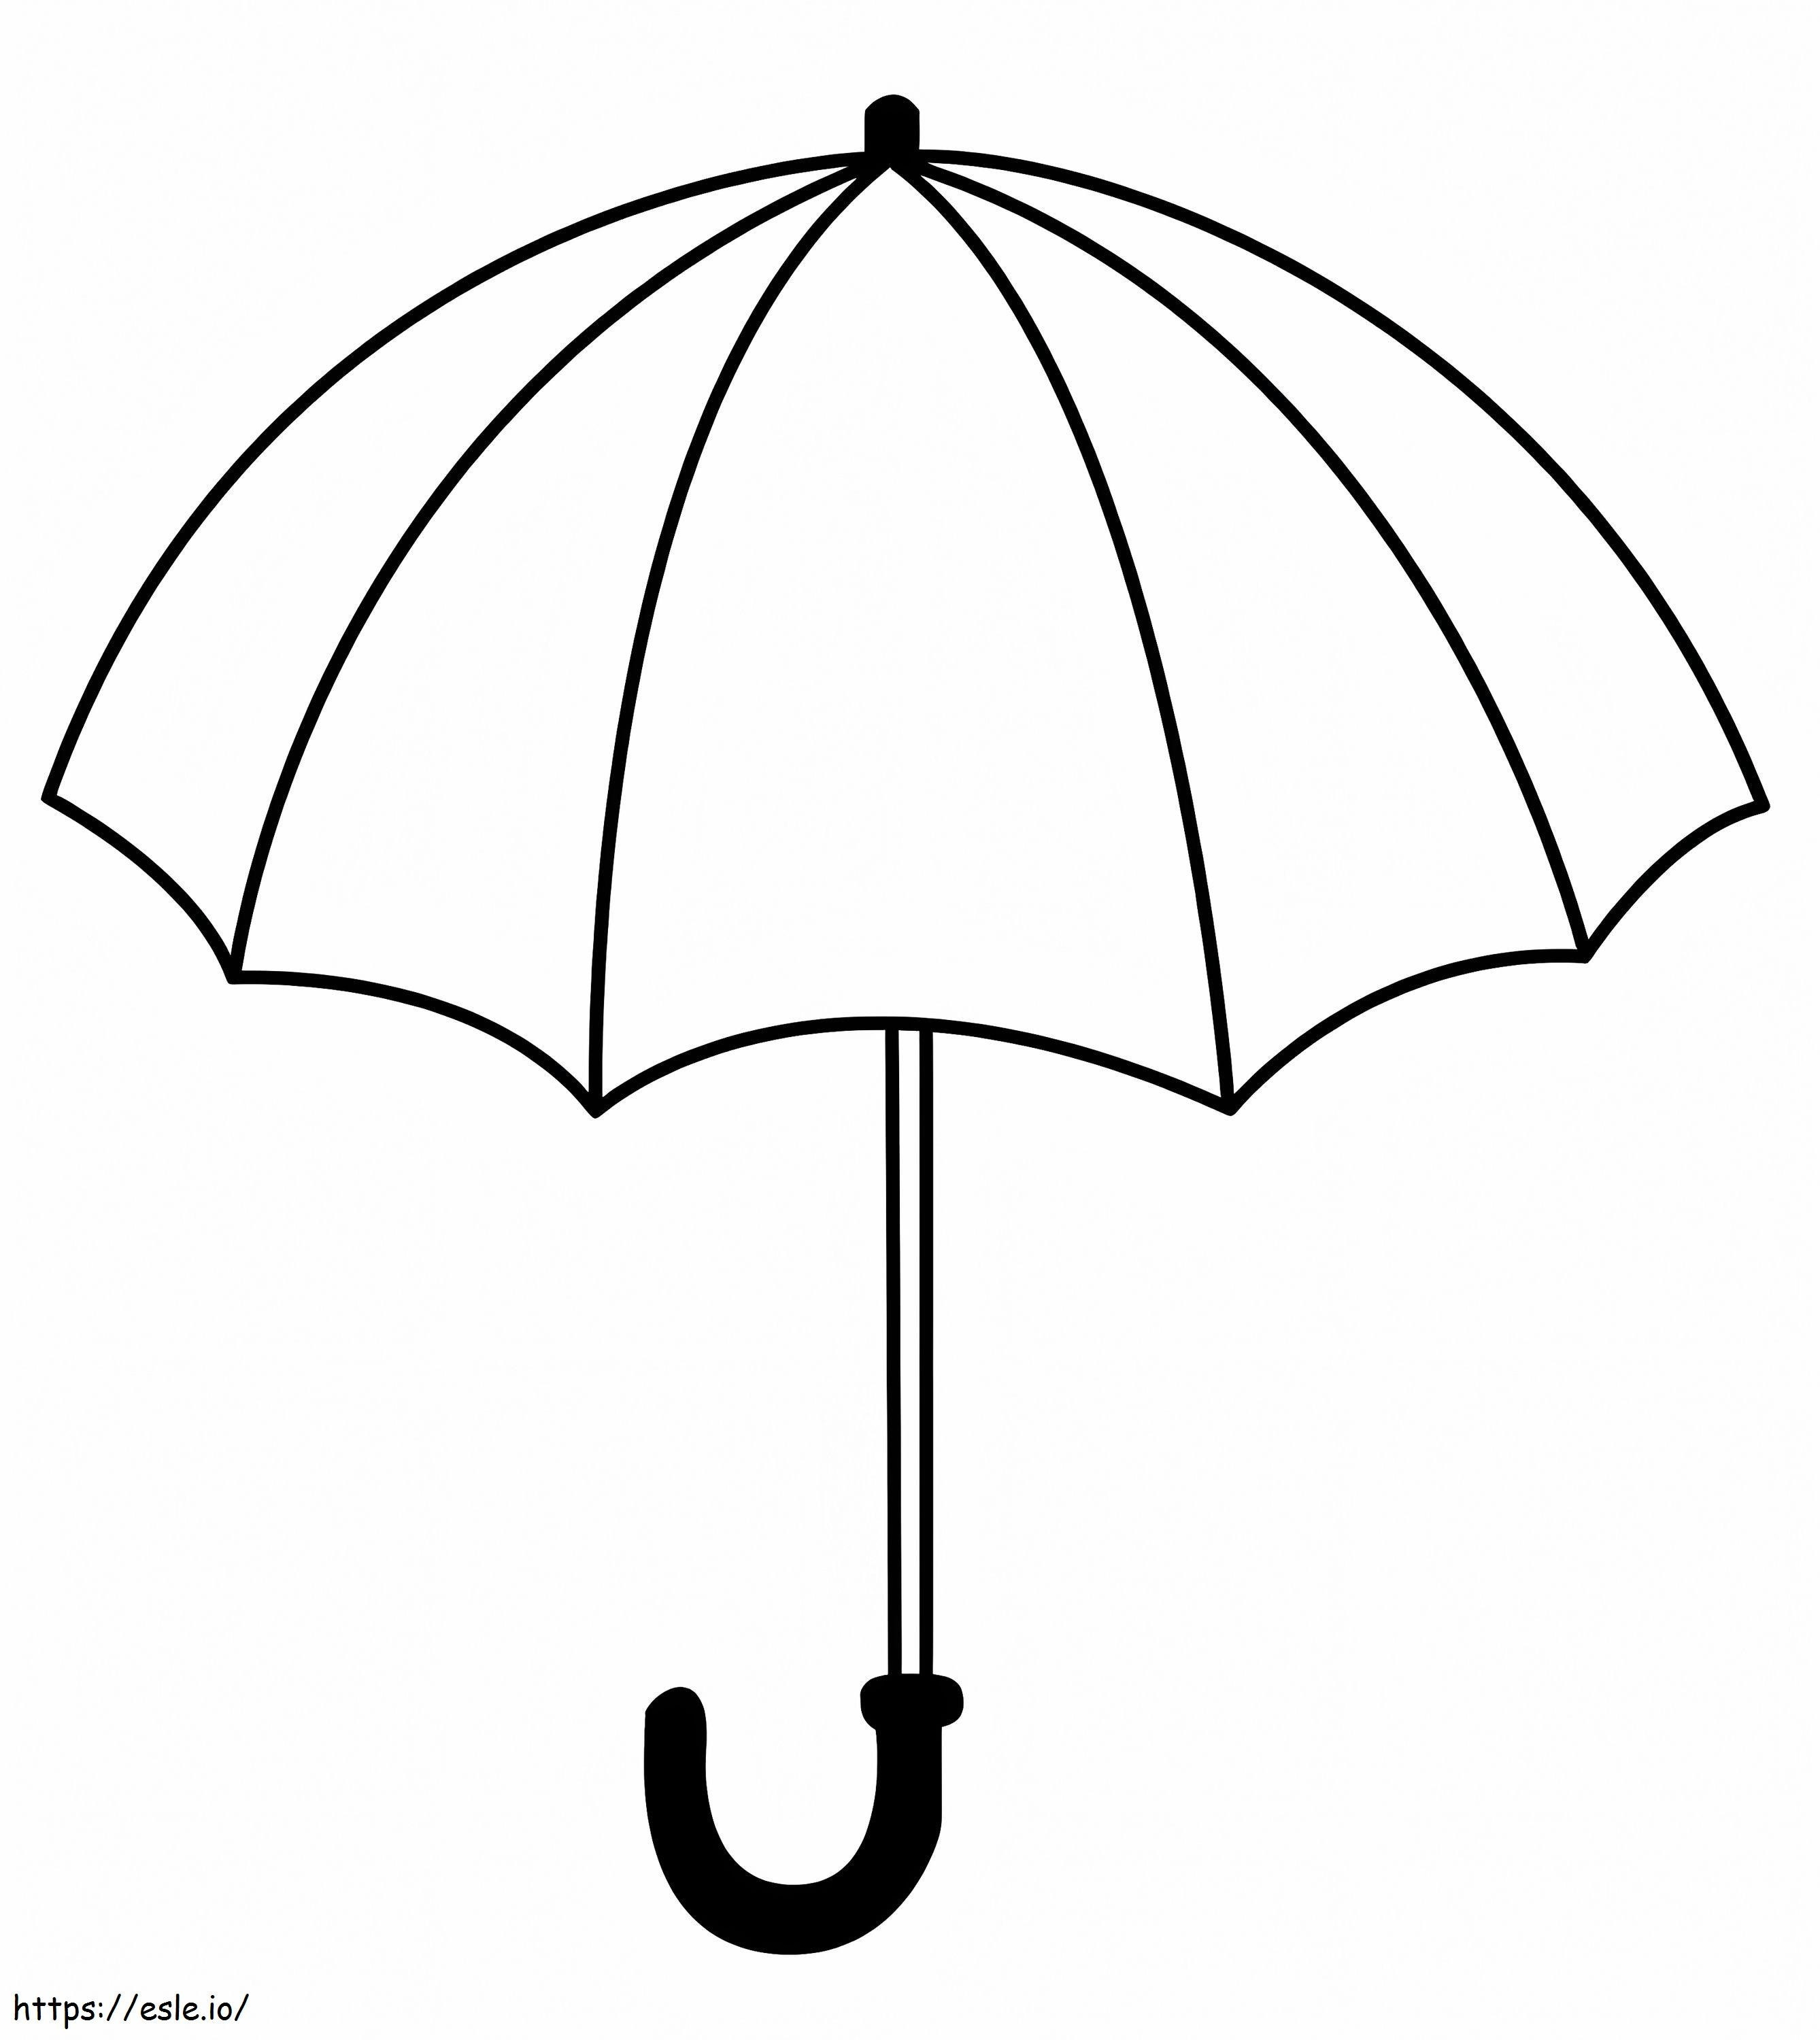 Un ombrello da colorare